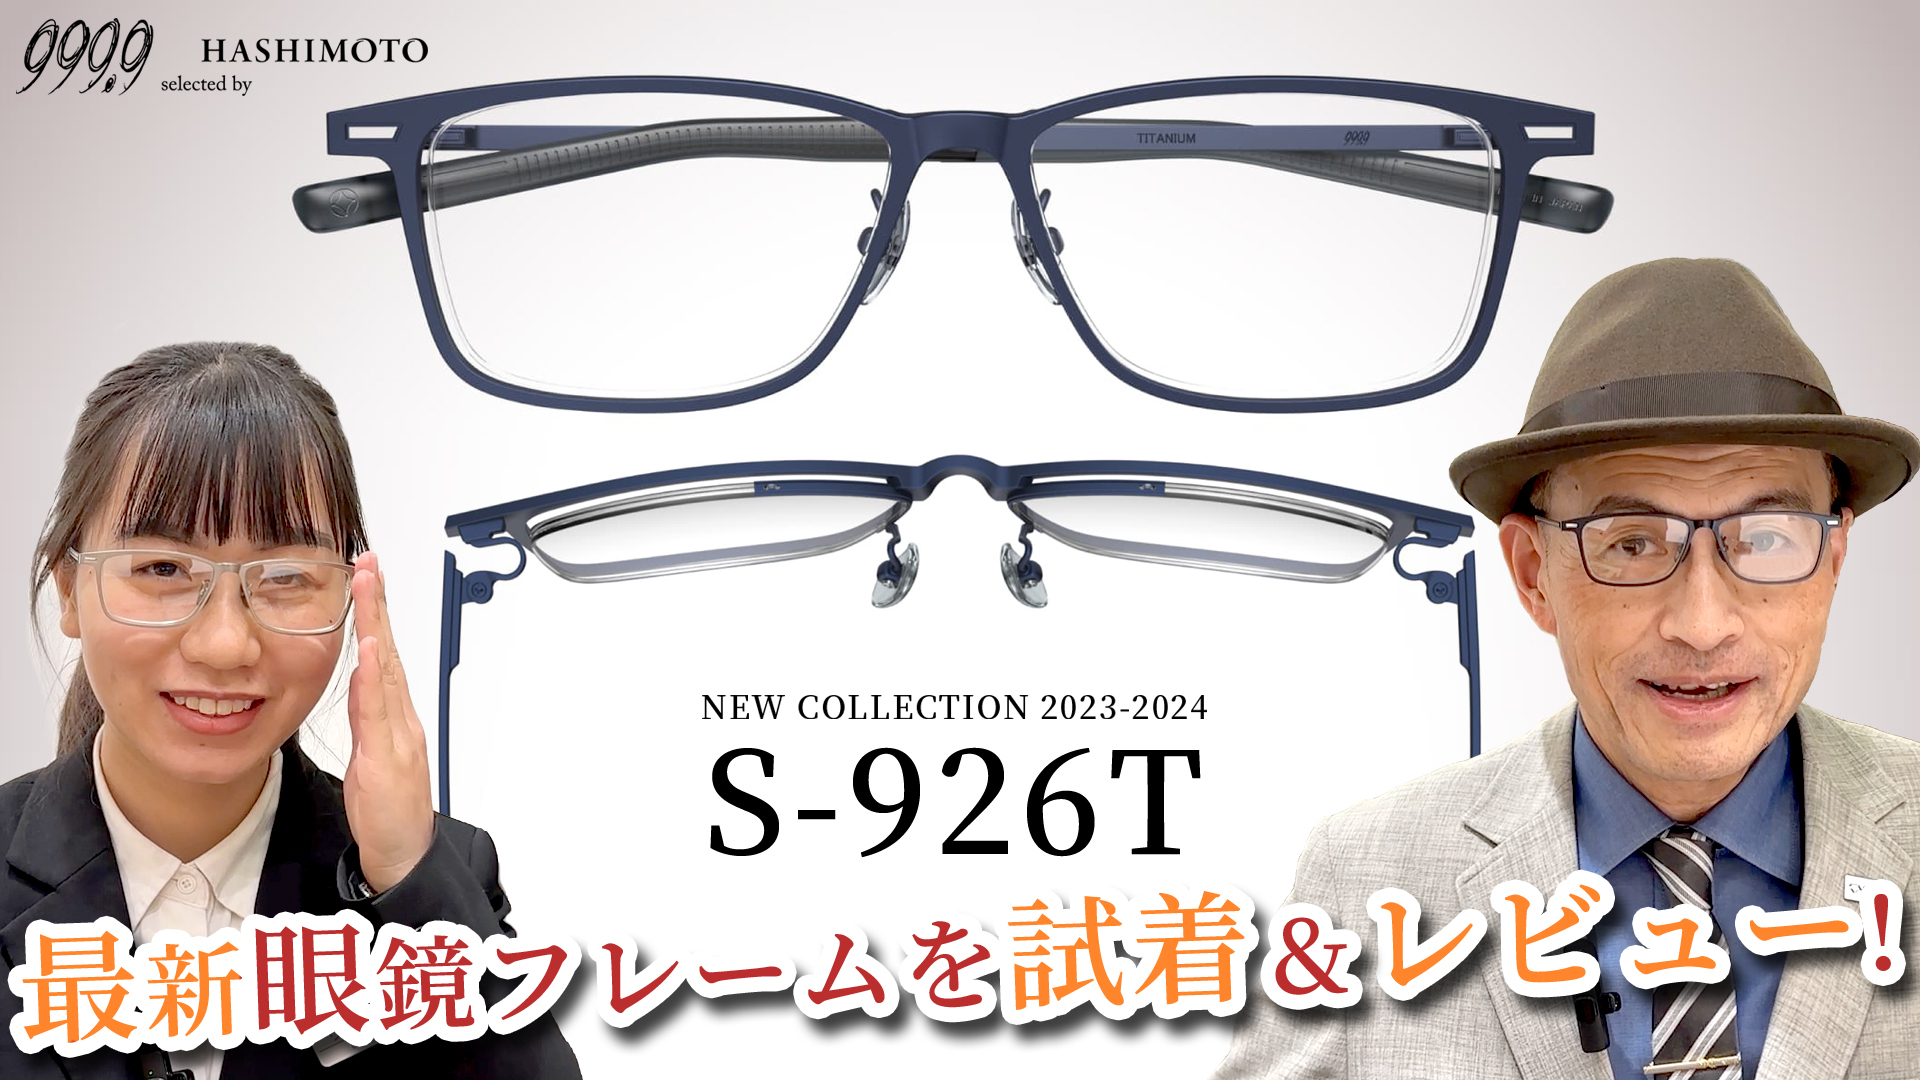 999.9 フォーナインズ最新眼鏡フレーム S-926T YouTube 動画レビュー 茨城県つくば市 眼鏡 メガネ